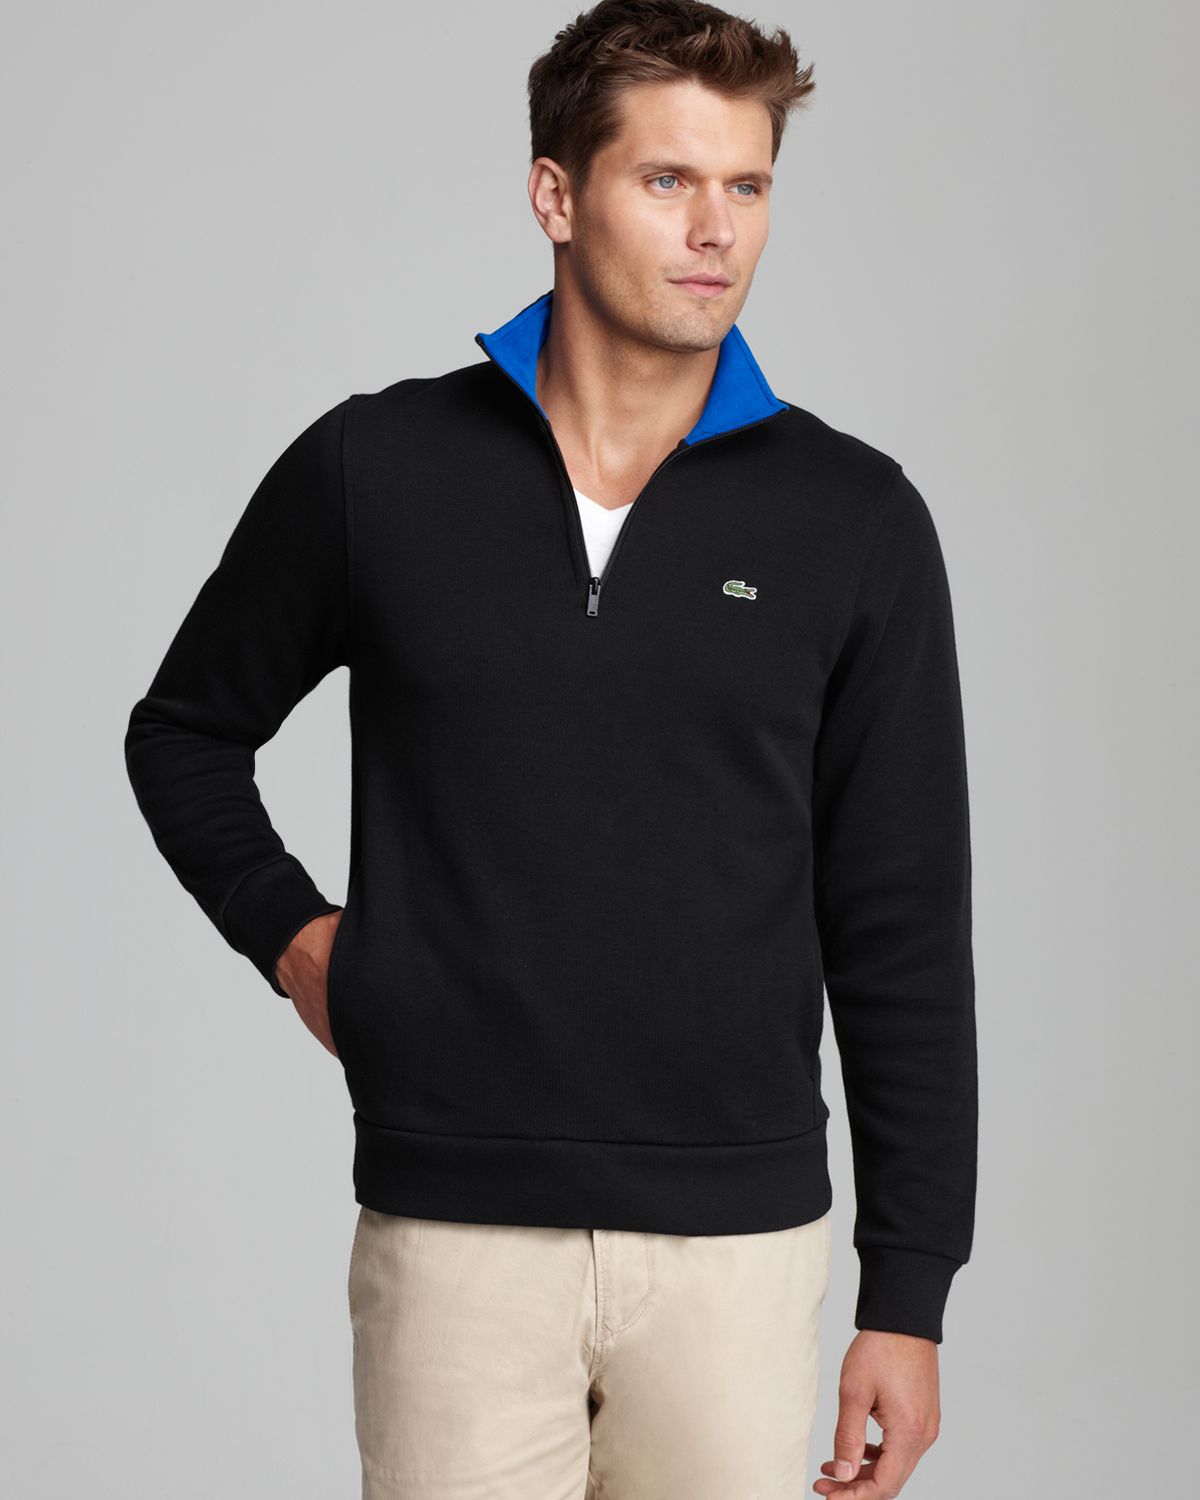 lacoste men's half zip sweater off 62 